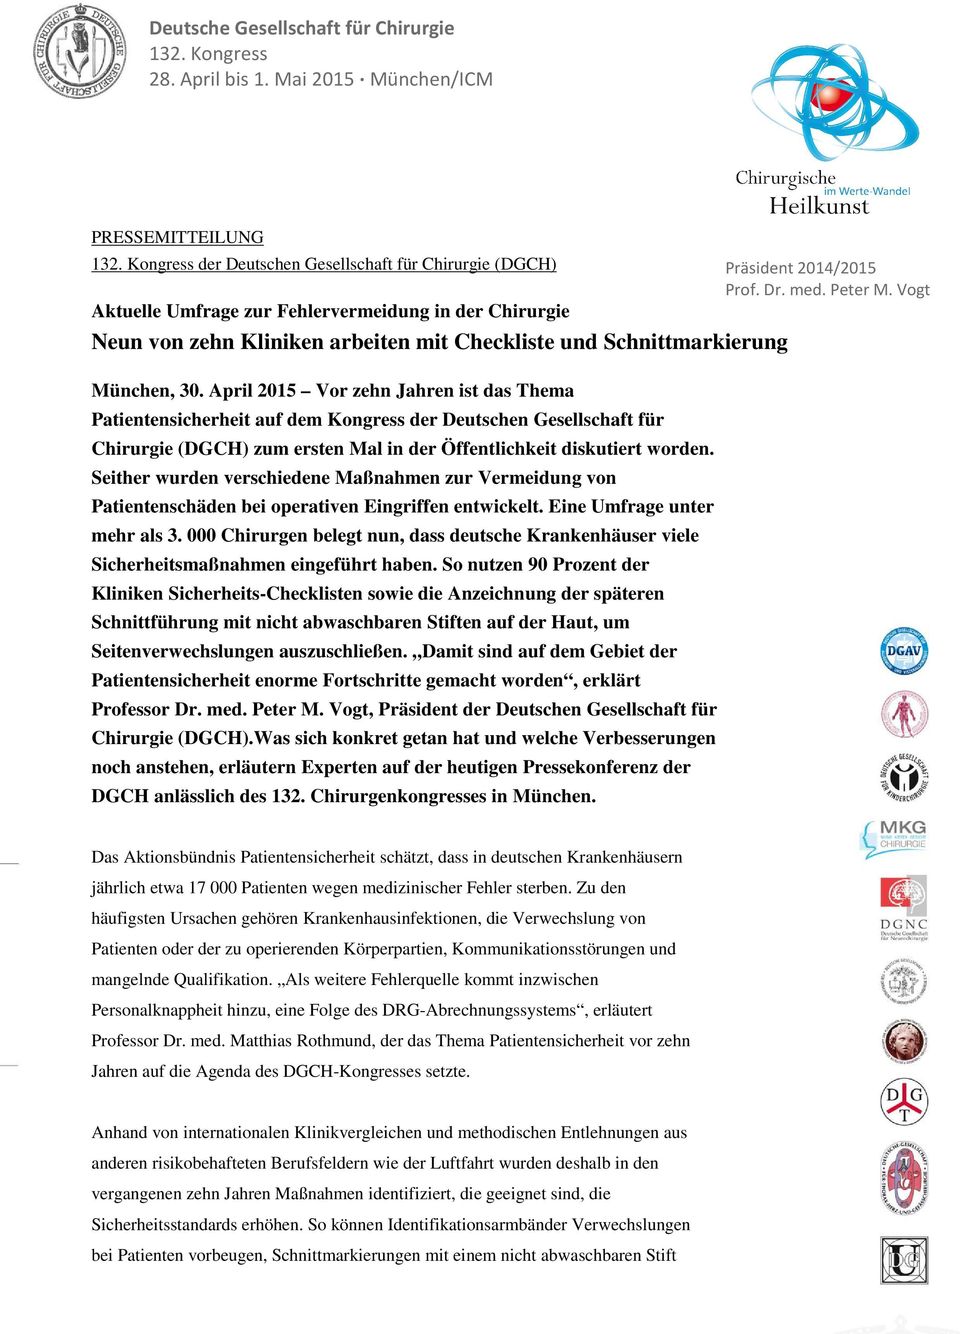 April 2015 Vor zehn Jahren ist das Thema Patientensicherheit auf dem Kongress der Deutschen Gesellschaft für Chirurgie (DGCH) zum ersten Mal in der Öffentlichkeit diskutiert worden.